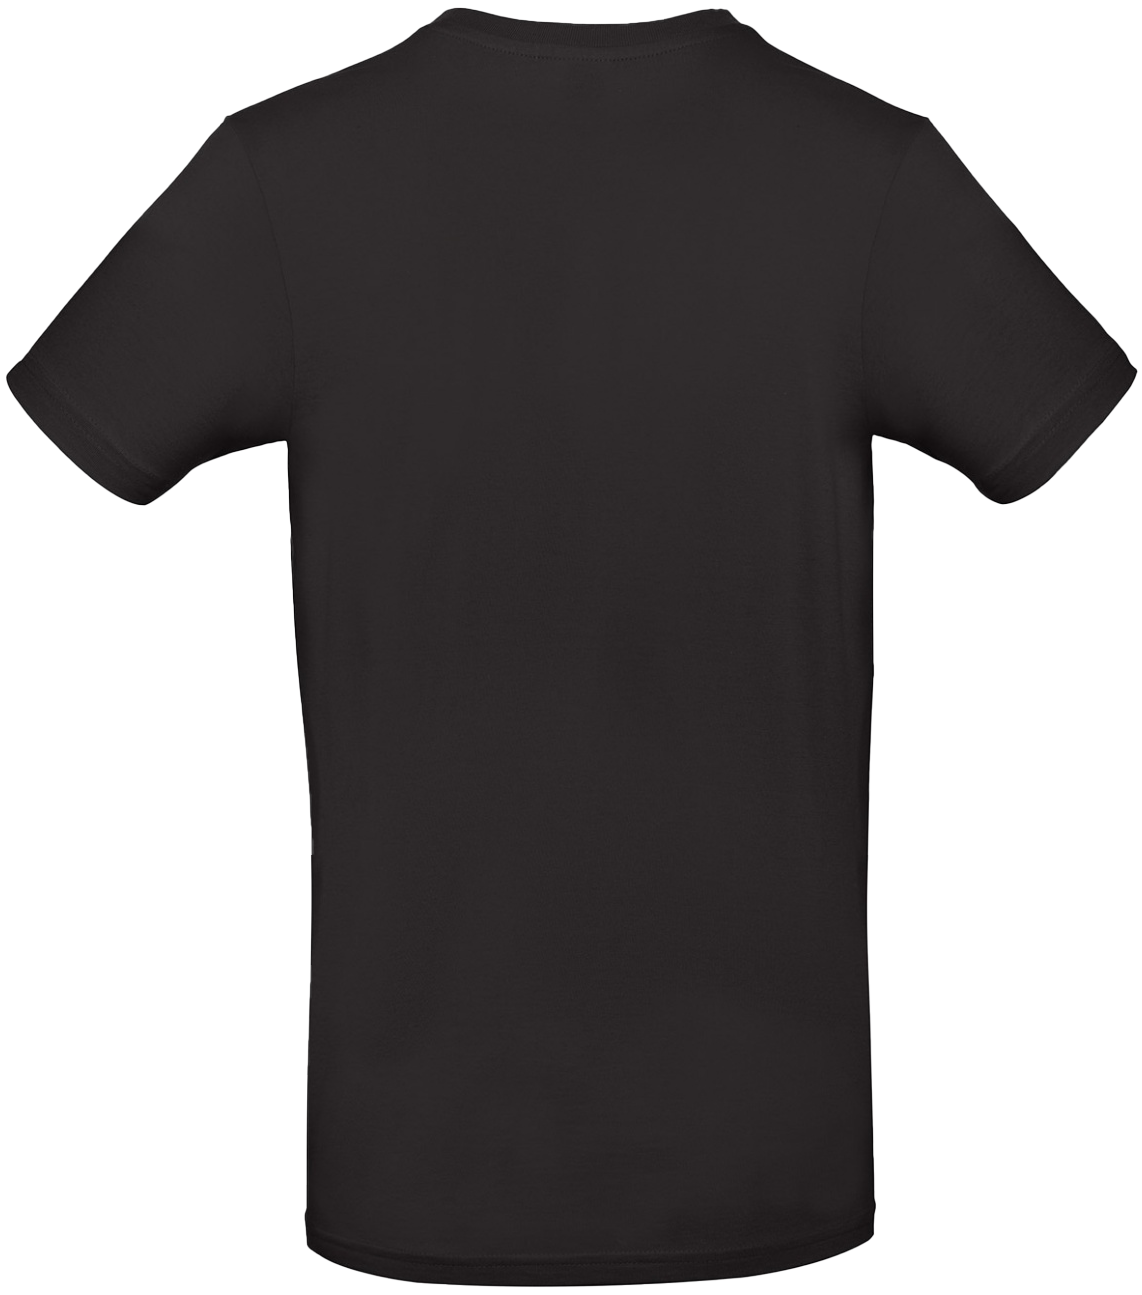 T-shirt E#190 Svart 62